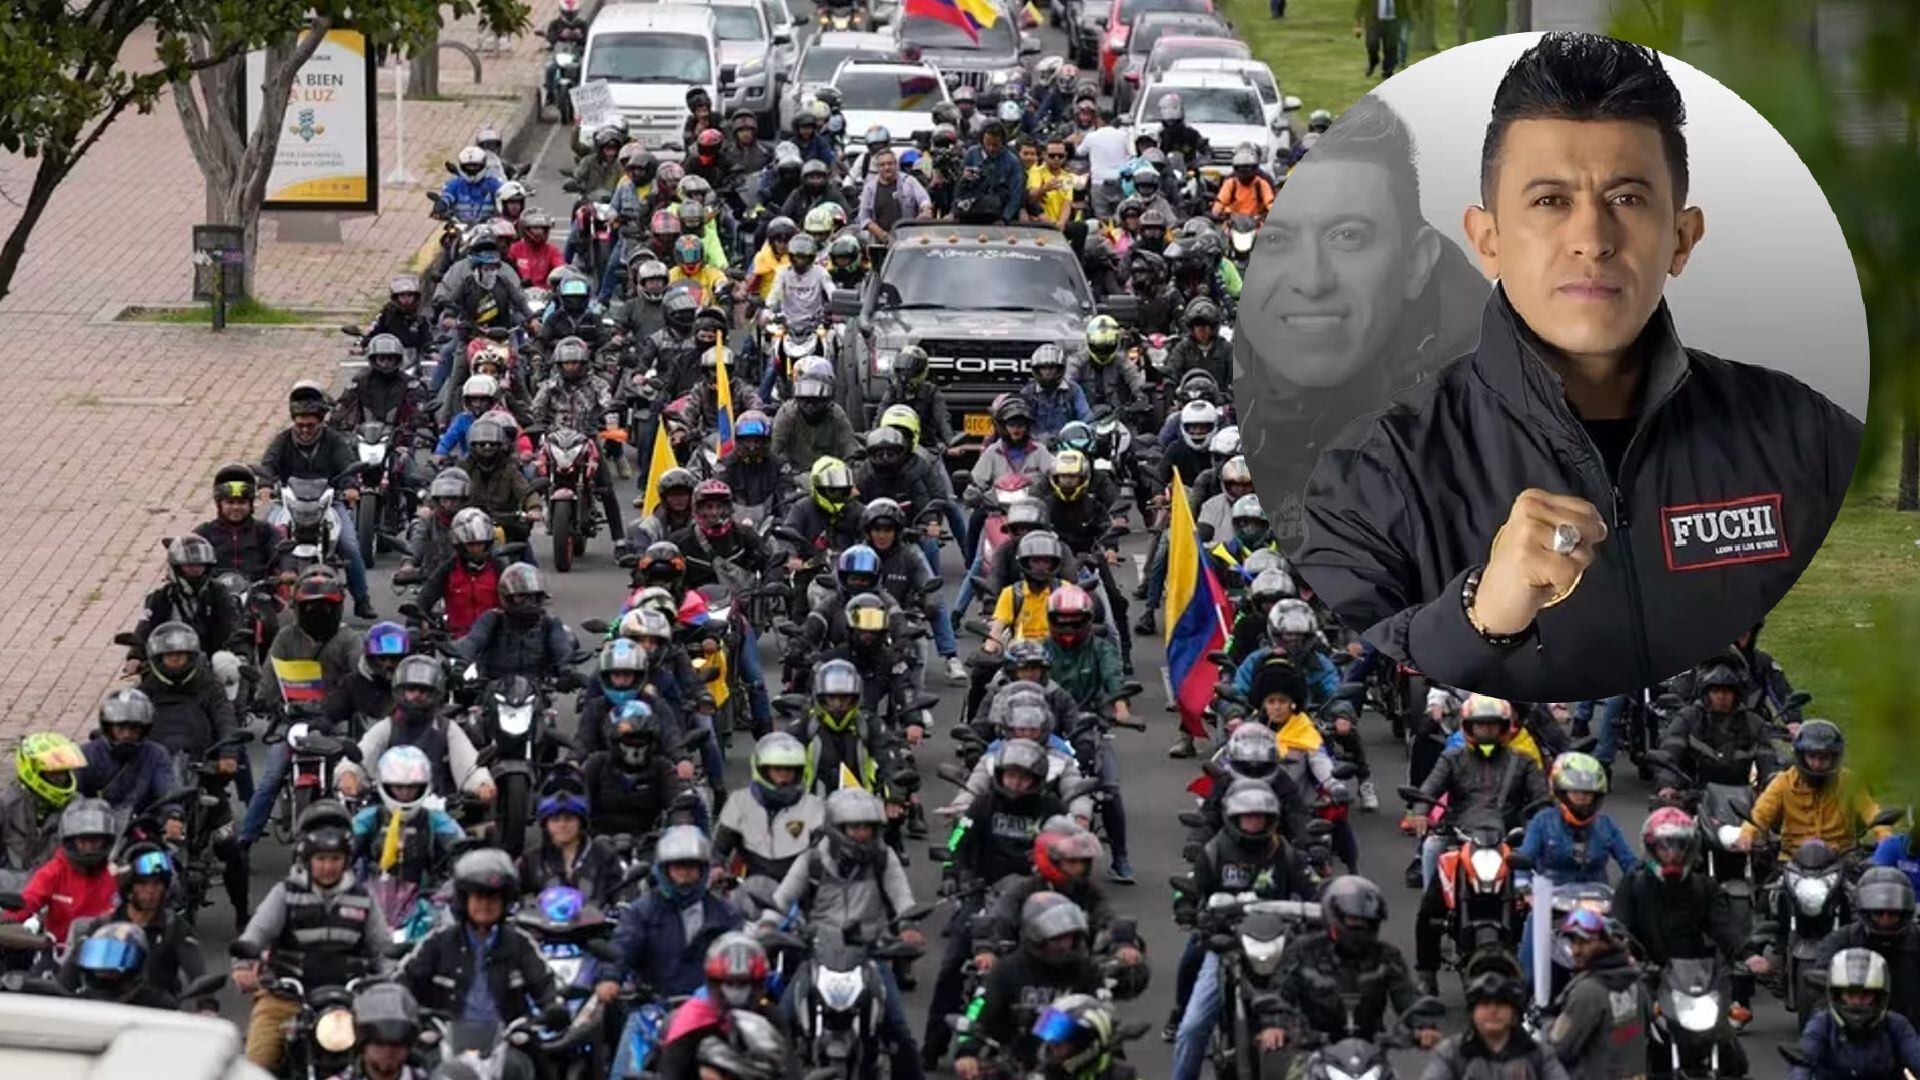 Los internautas se dirigieron al concejal Fuchi por ser líder del gremio de motociclistas - crédito Fernando Vergara/AP/Fuchi Concejal/Facebook